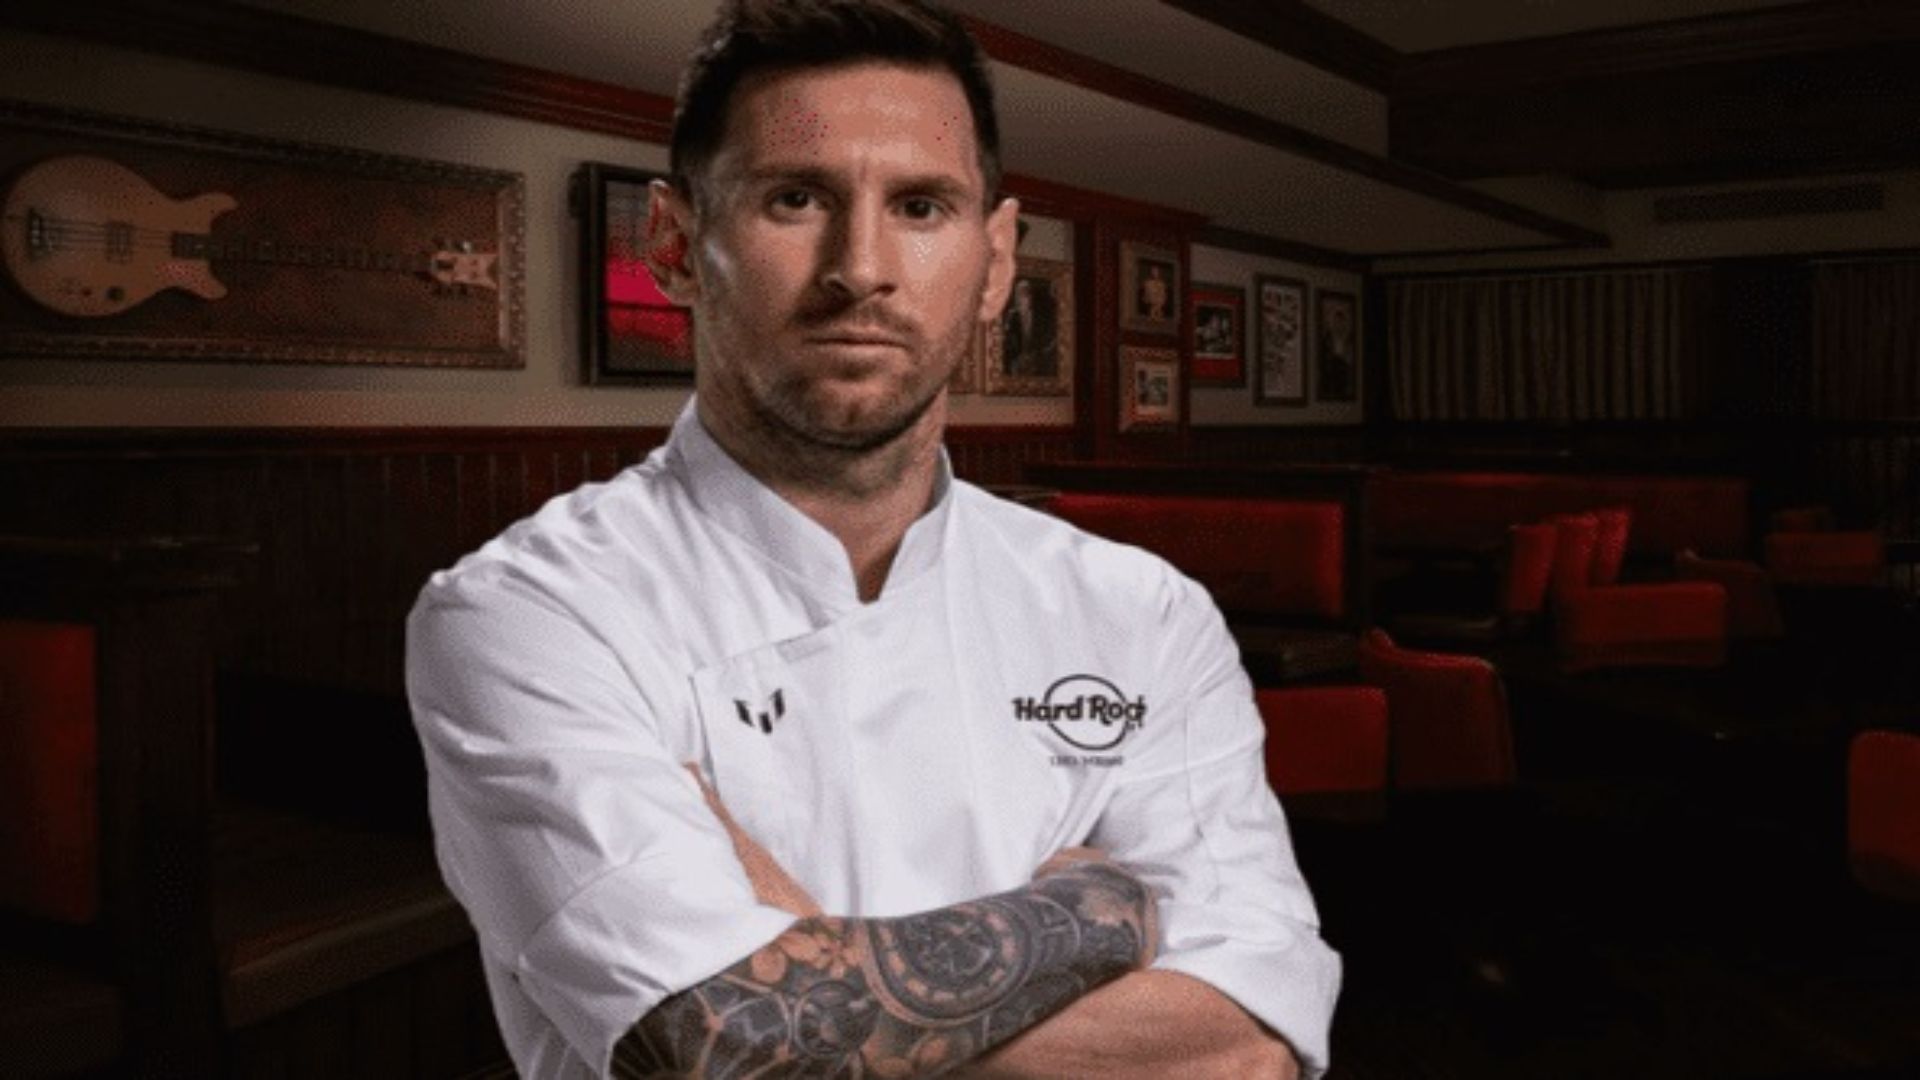 Messi e Hard Rock International firmaram uma parceria gastronômica